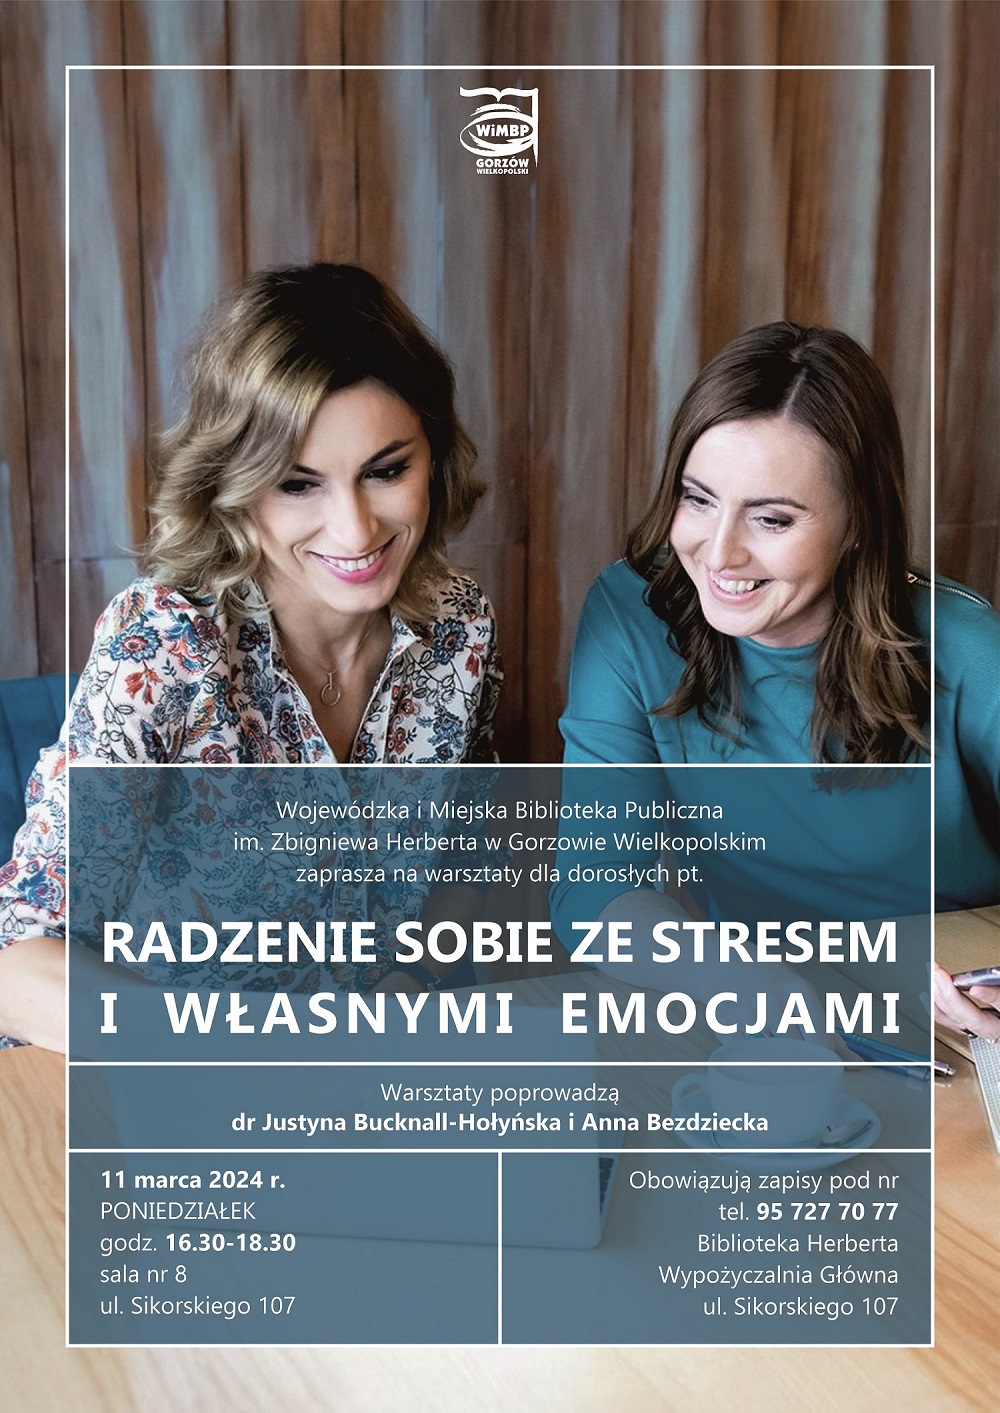 Plakat promujący wydarzenie ze zdjęciem dwóch uśmiechniętych kobiet